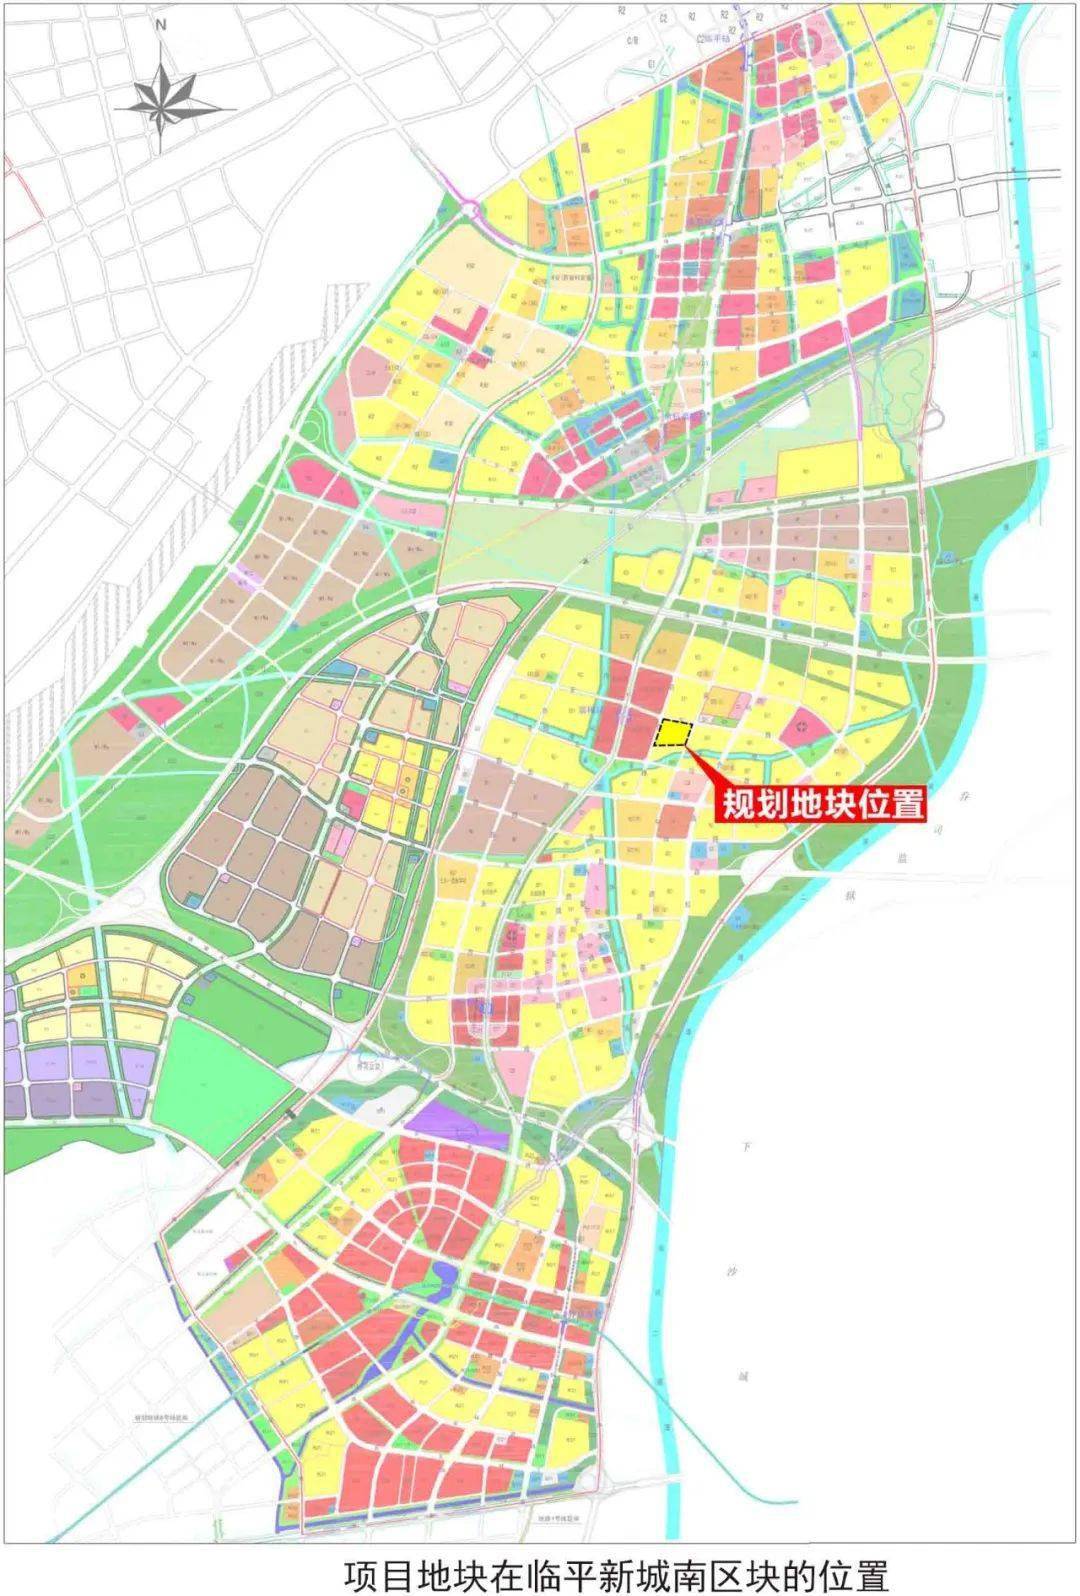 翁梅50亩宅地规划东湖新城文化中心项目再推进城建动态003威廉cheng